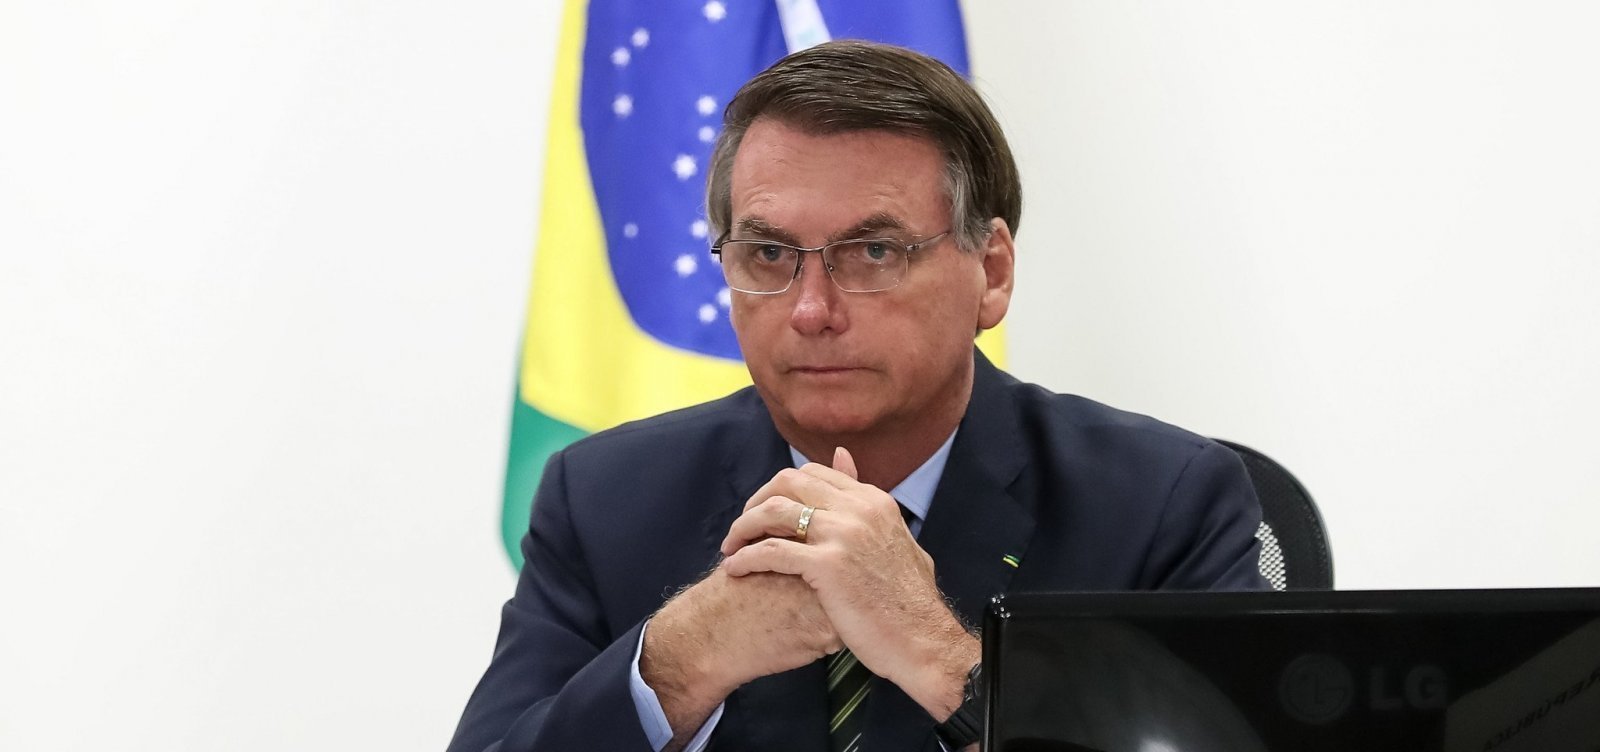 Pelo terceiro ano seguido, TCU aprova com ressalvas as contas do governo Bolsonaro